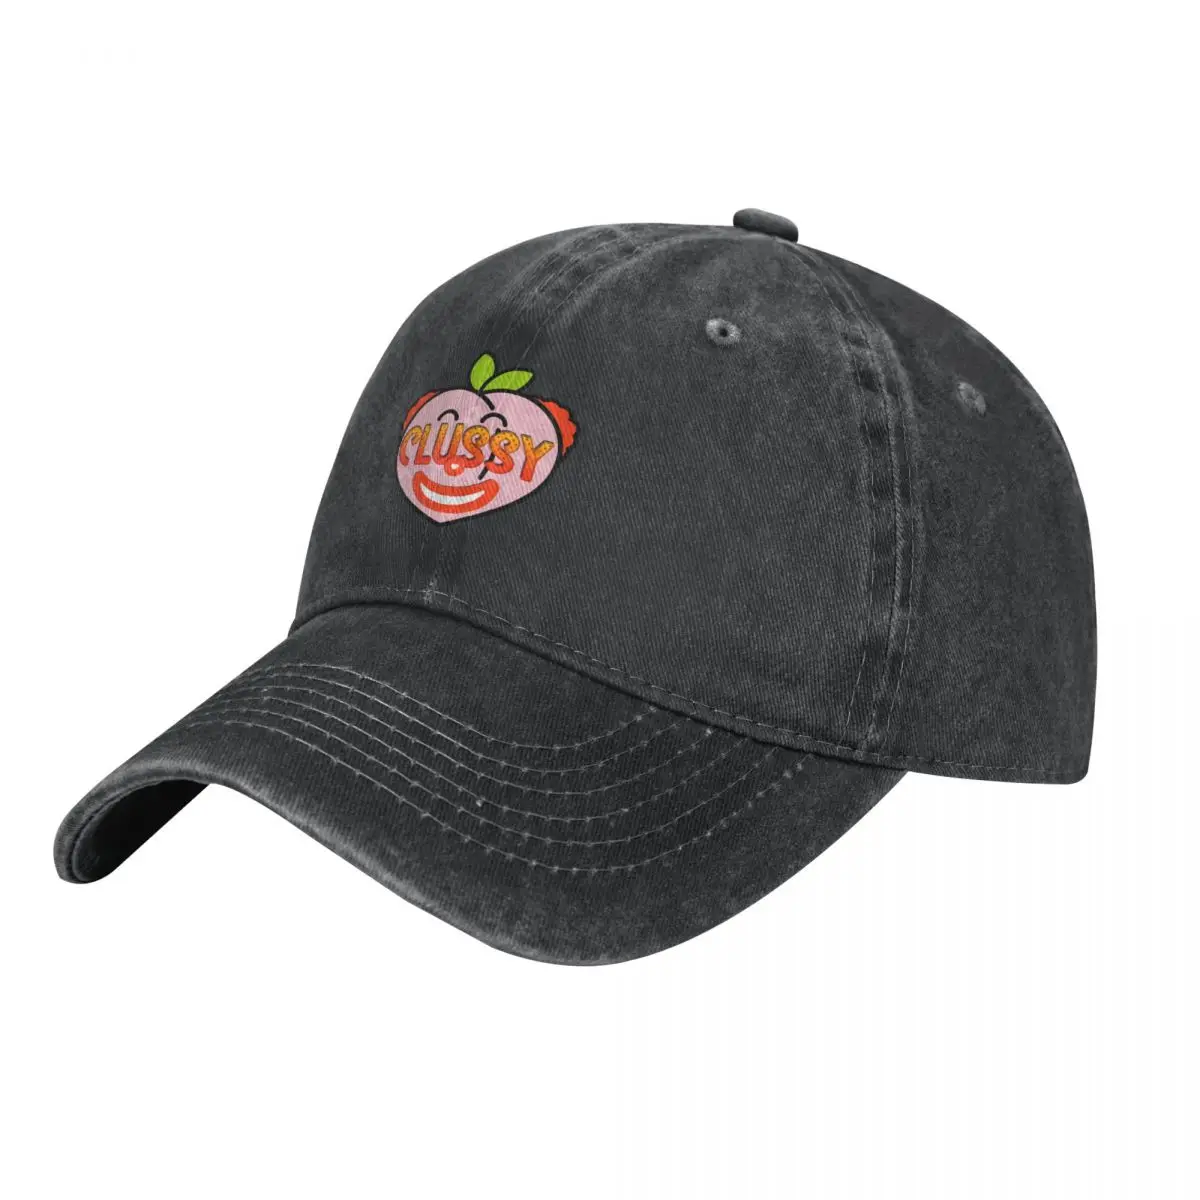 

Ковбойская шляпа CLUSSY, рыболовная Кепка, Солнцезащитная роскошная мужская и женская шляпа